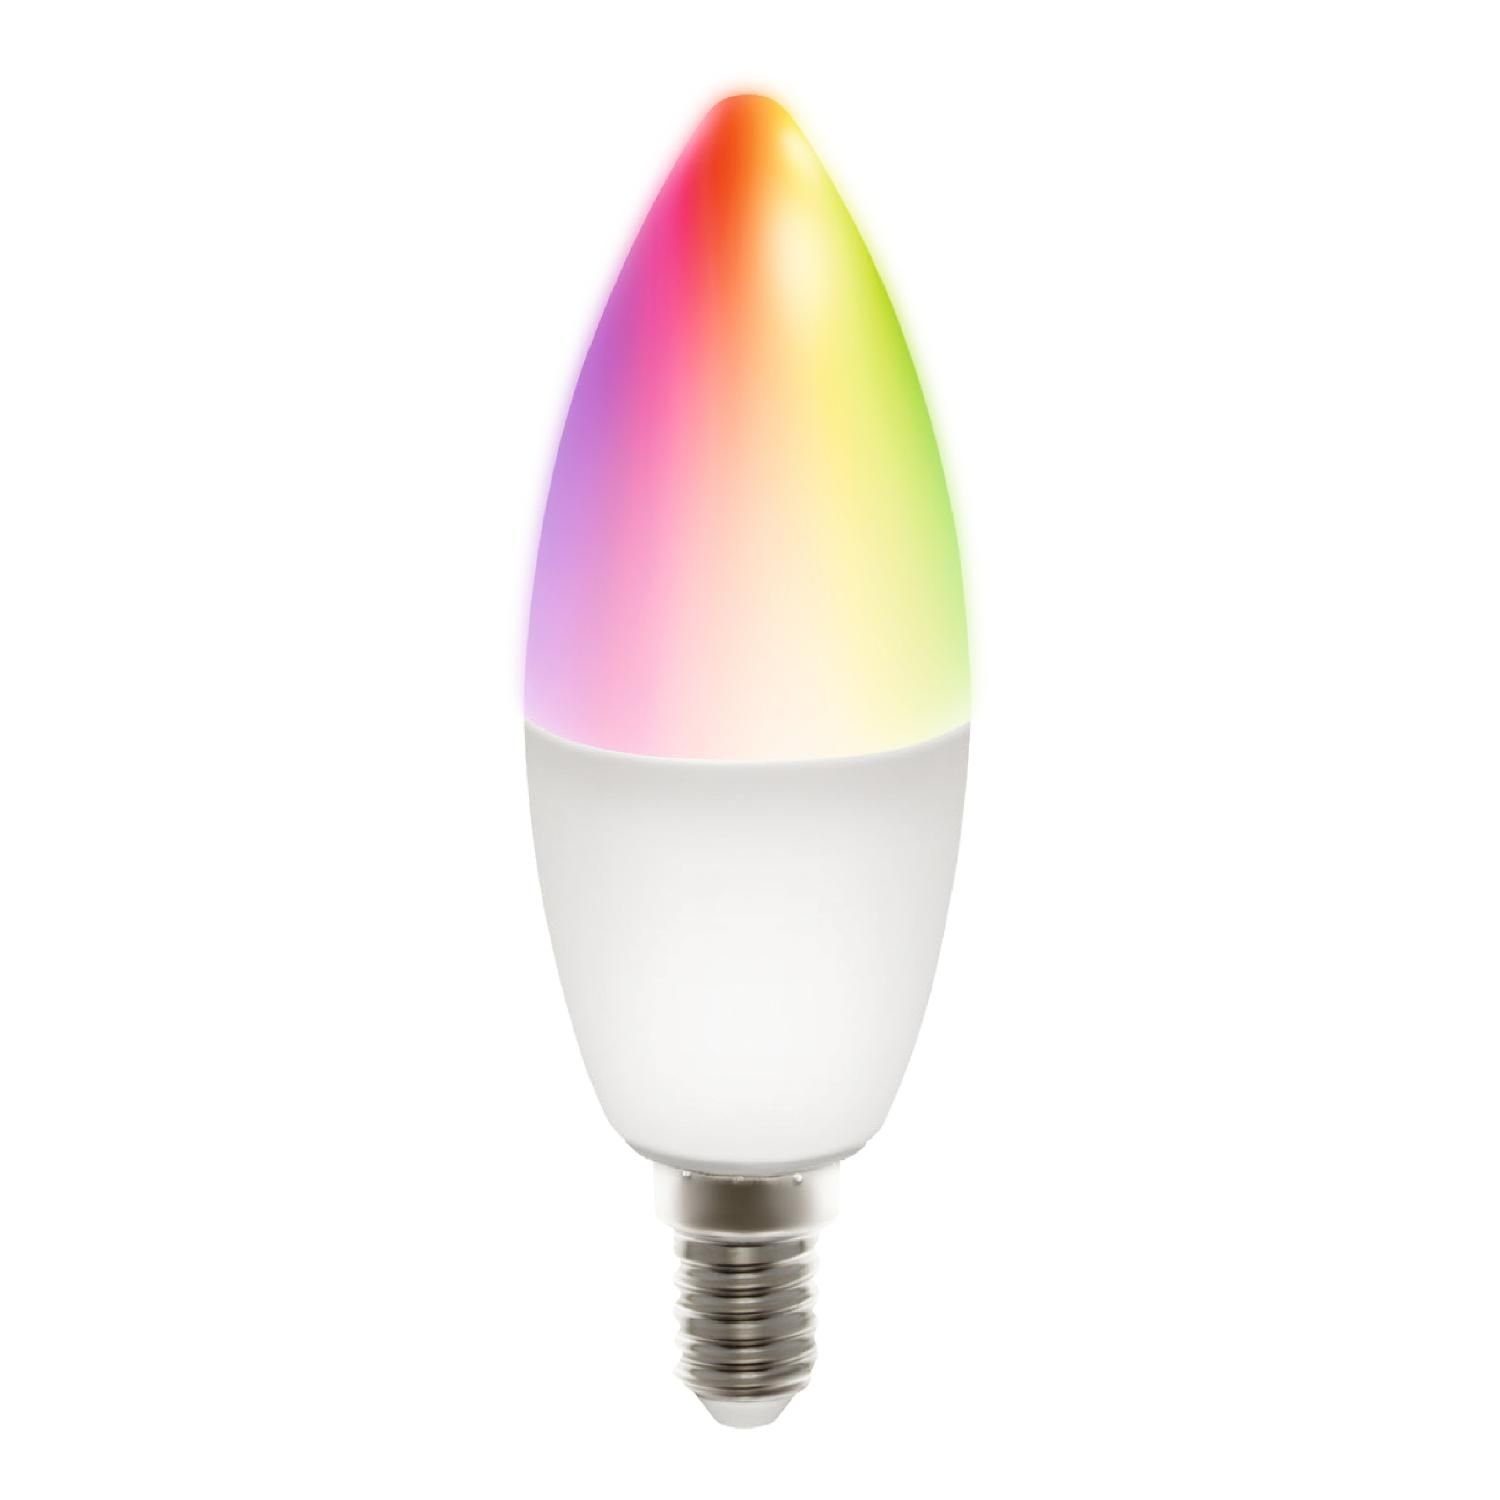 DELTACO SMART HOME Smarte E14 LED Kerze, RGB 5 Watt LED-Leuchtmittel, E14,  1 St., inkl. 5 Jahre Herstellergarantie